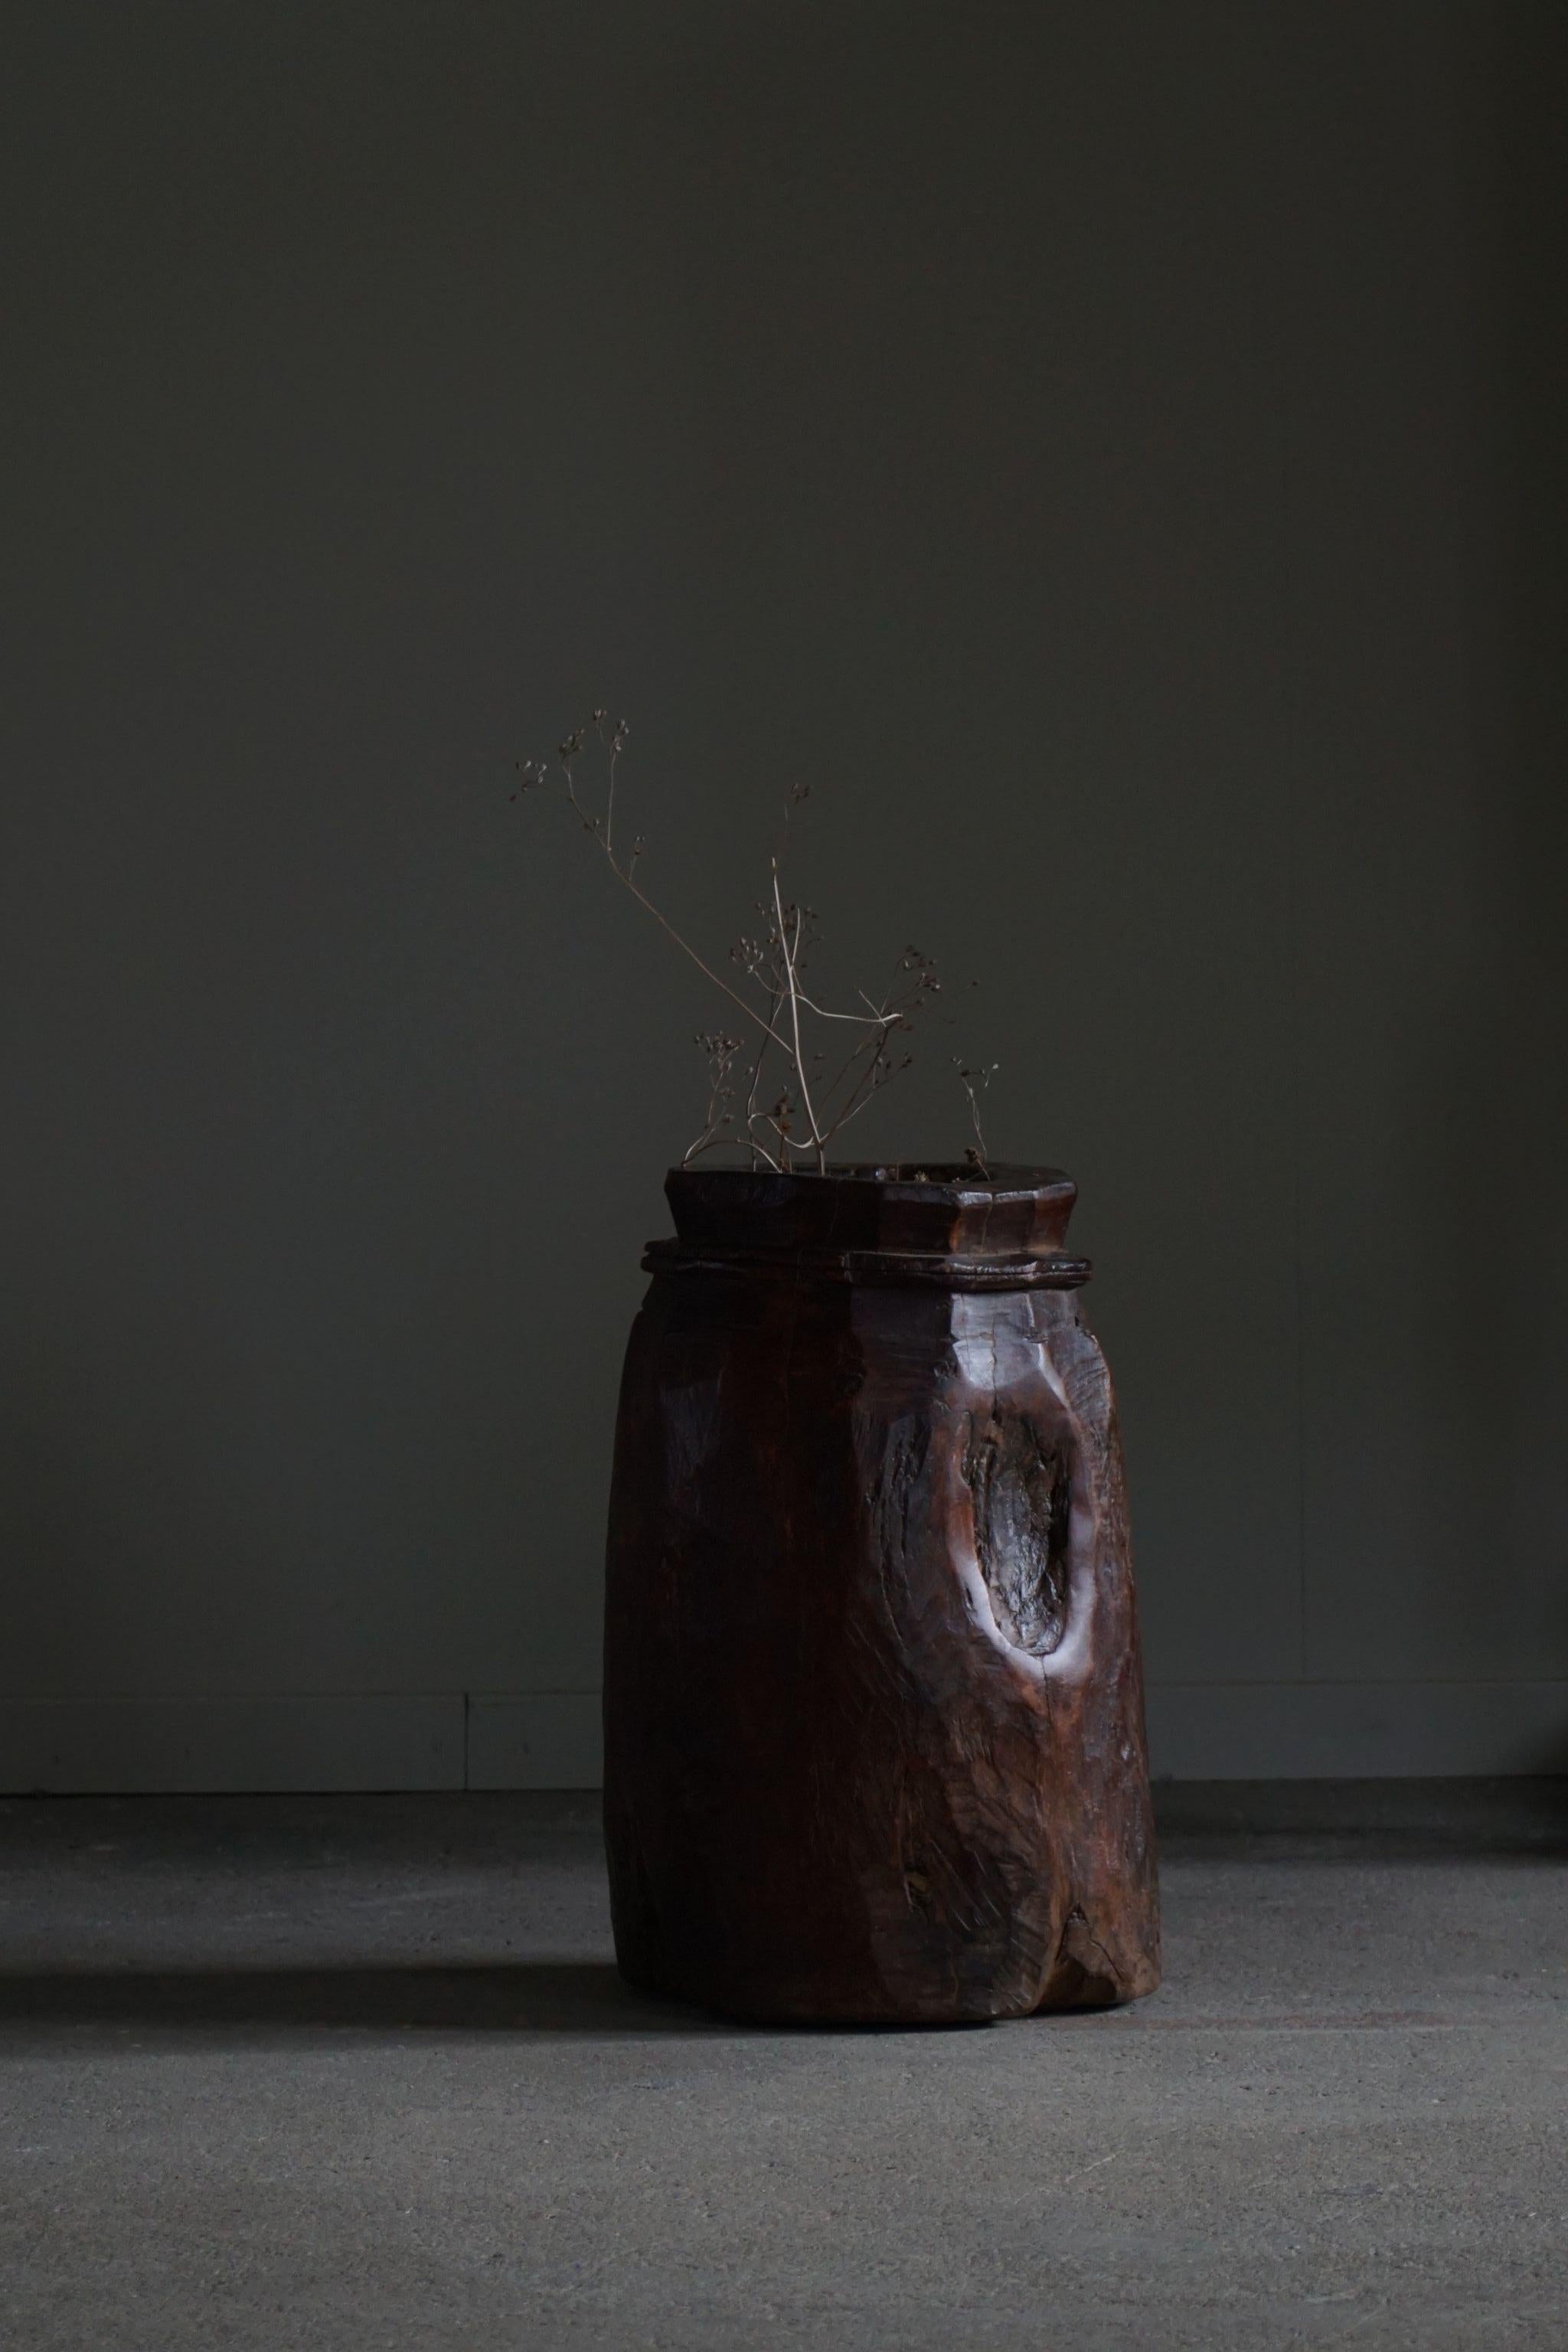 Vase / pot à plantes primitif authentique et unique en son genre, fabriqué à partir d'un seul bois dur massif. Sculptée à la main par la tribu des Naga en Inde, vers les années 1970.
Une belle pièce wabi sabi en bon état vintage avec quelques